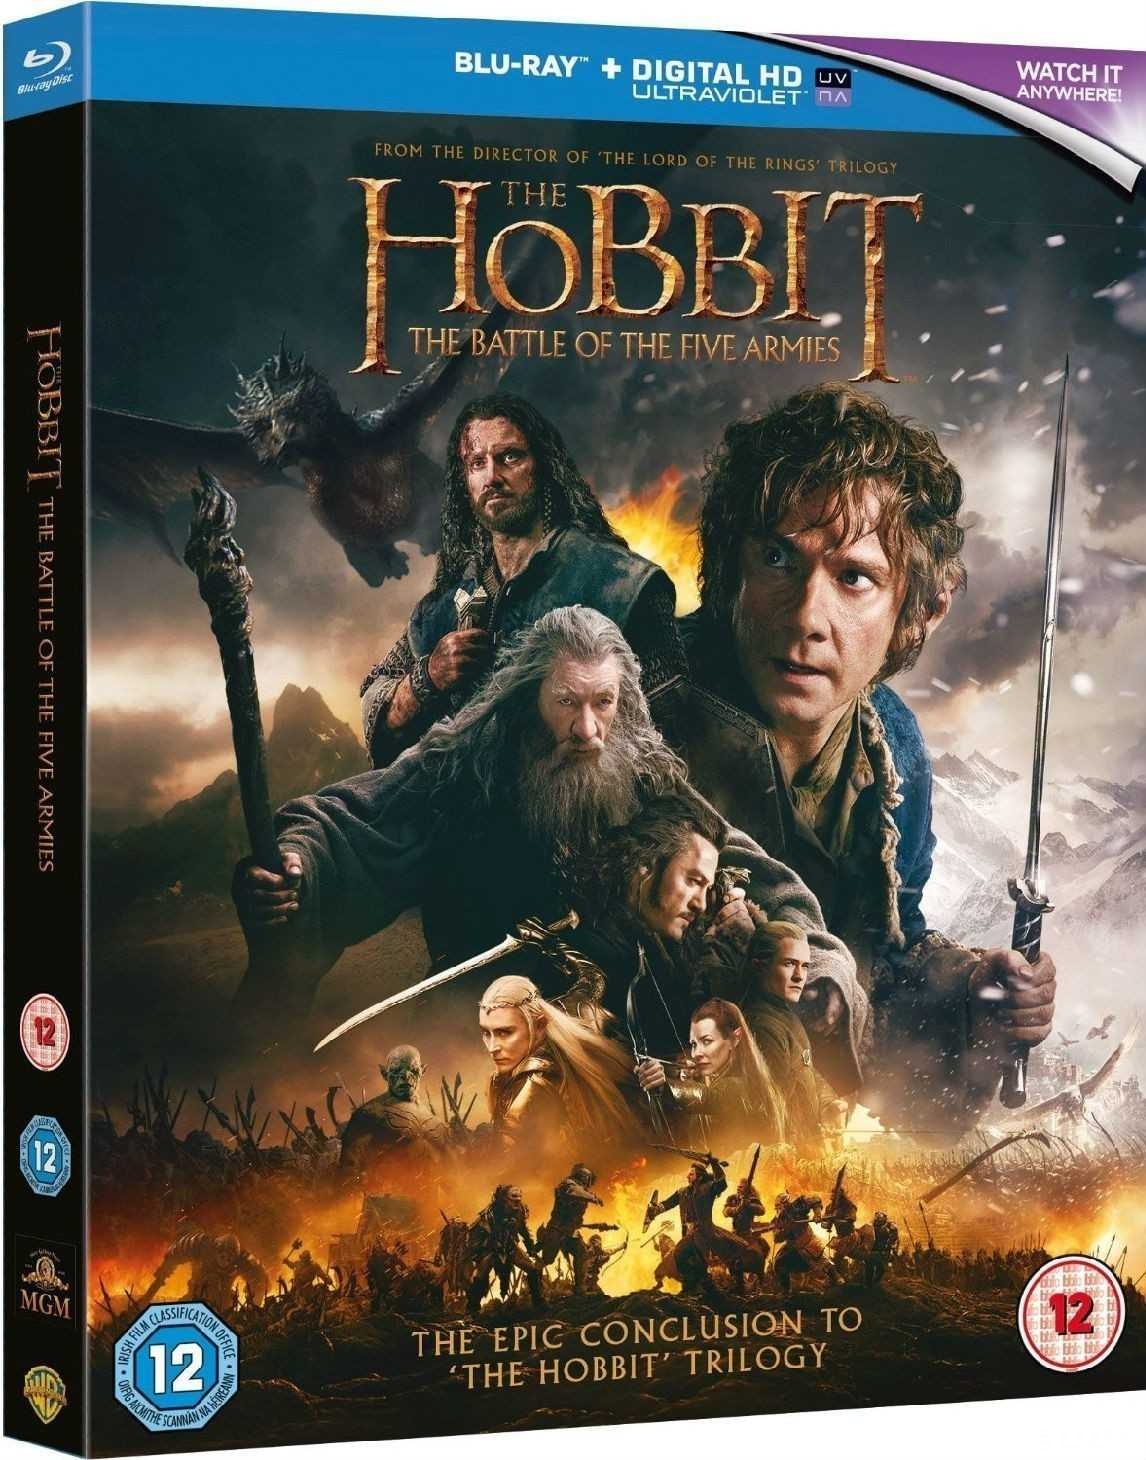 霍比特人3:五军之战 The.Hobbit.2014.1080p.BluRay.REMUX.AVC.DTS-HD.MA.7.1-RARBG 29.9GB-1.jpg